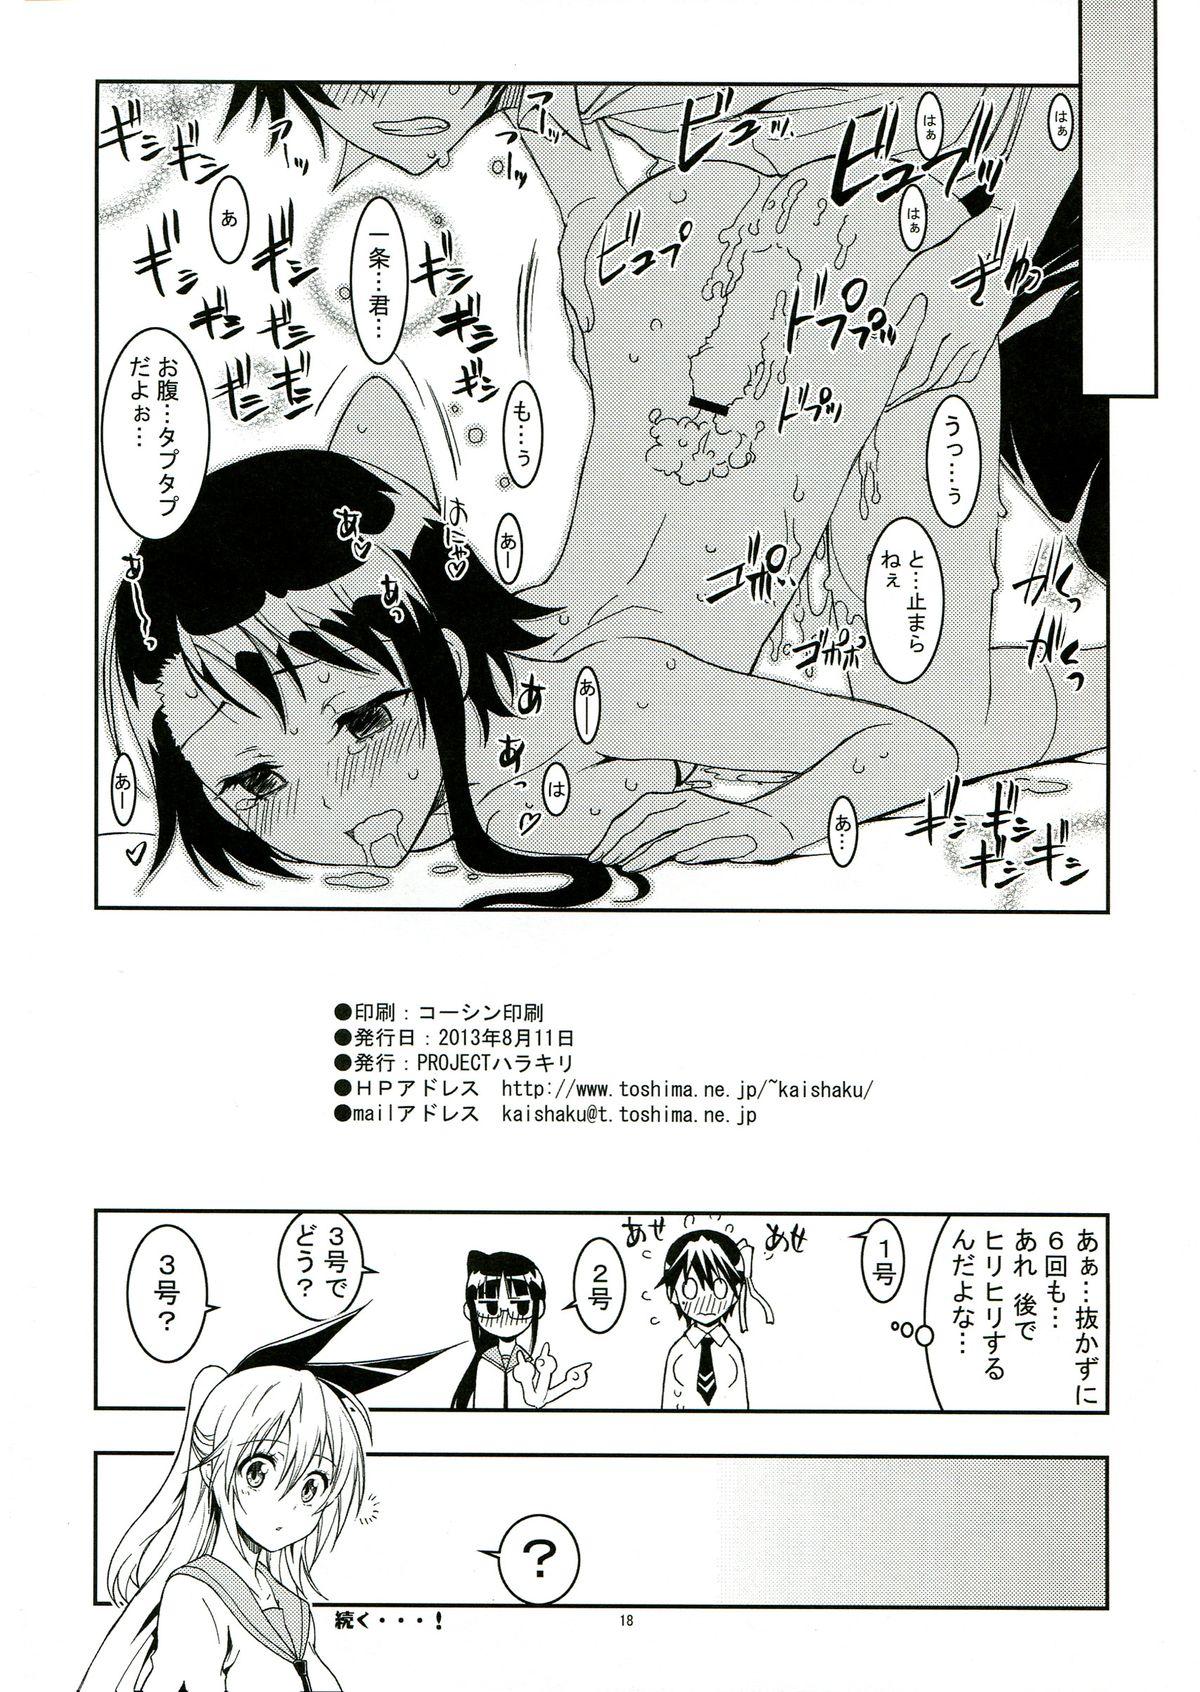 Glory Hole Nisenisekoi 2 - Nisekoi Monster - Page 18